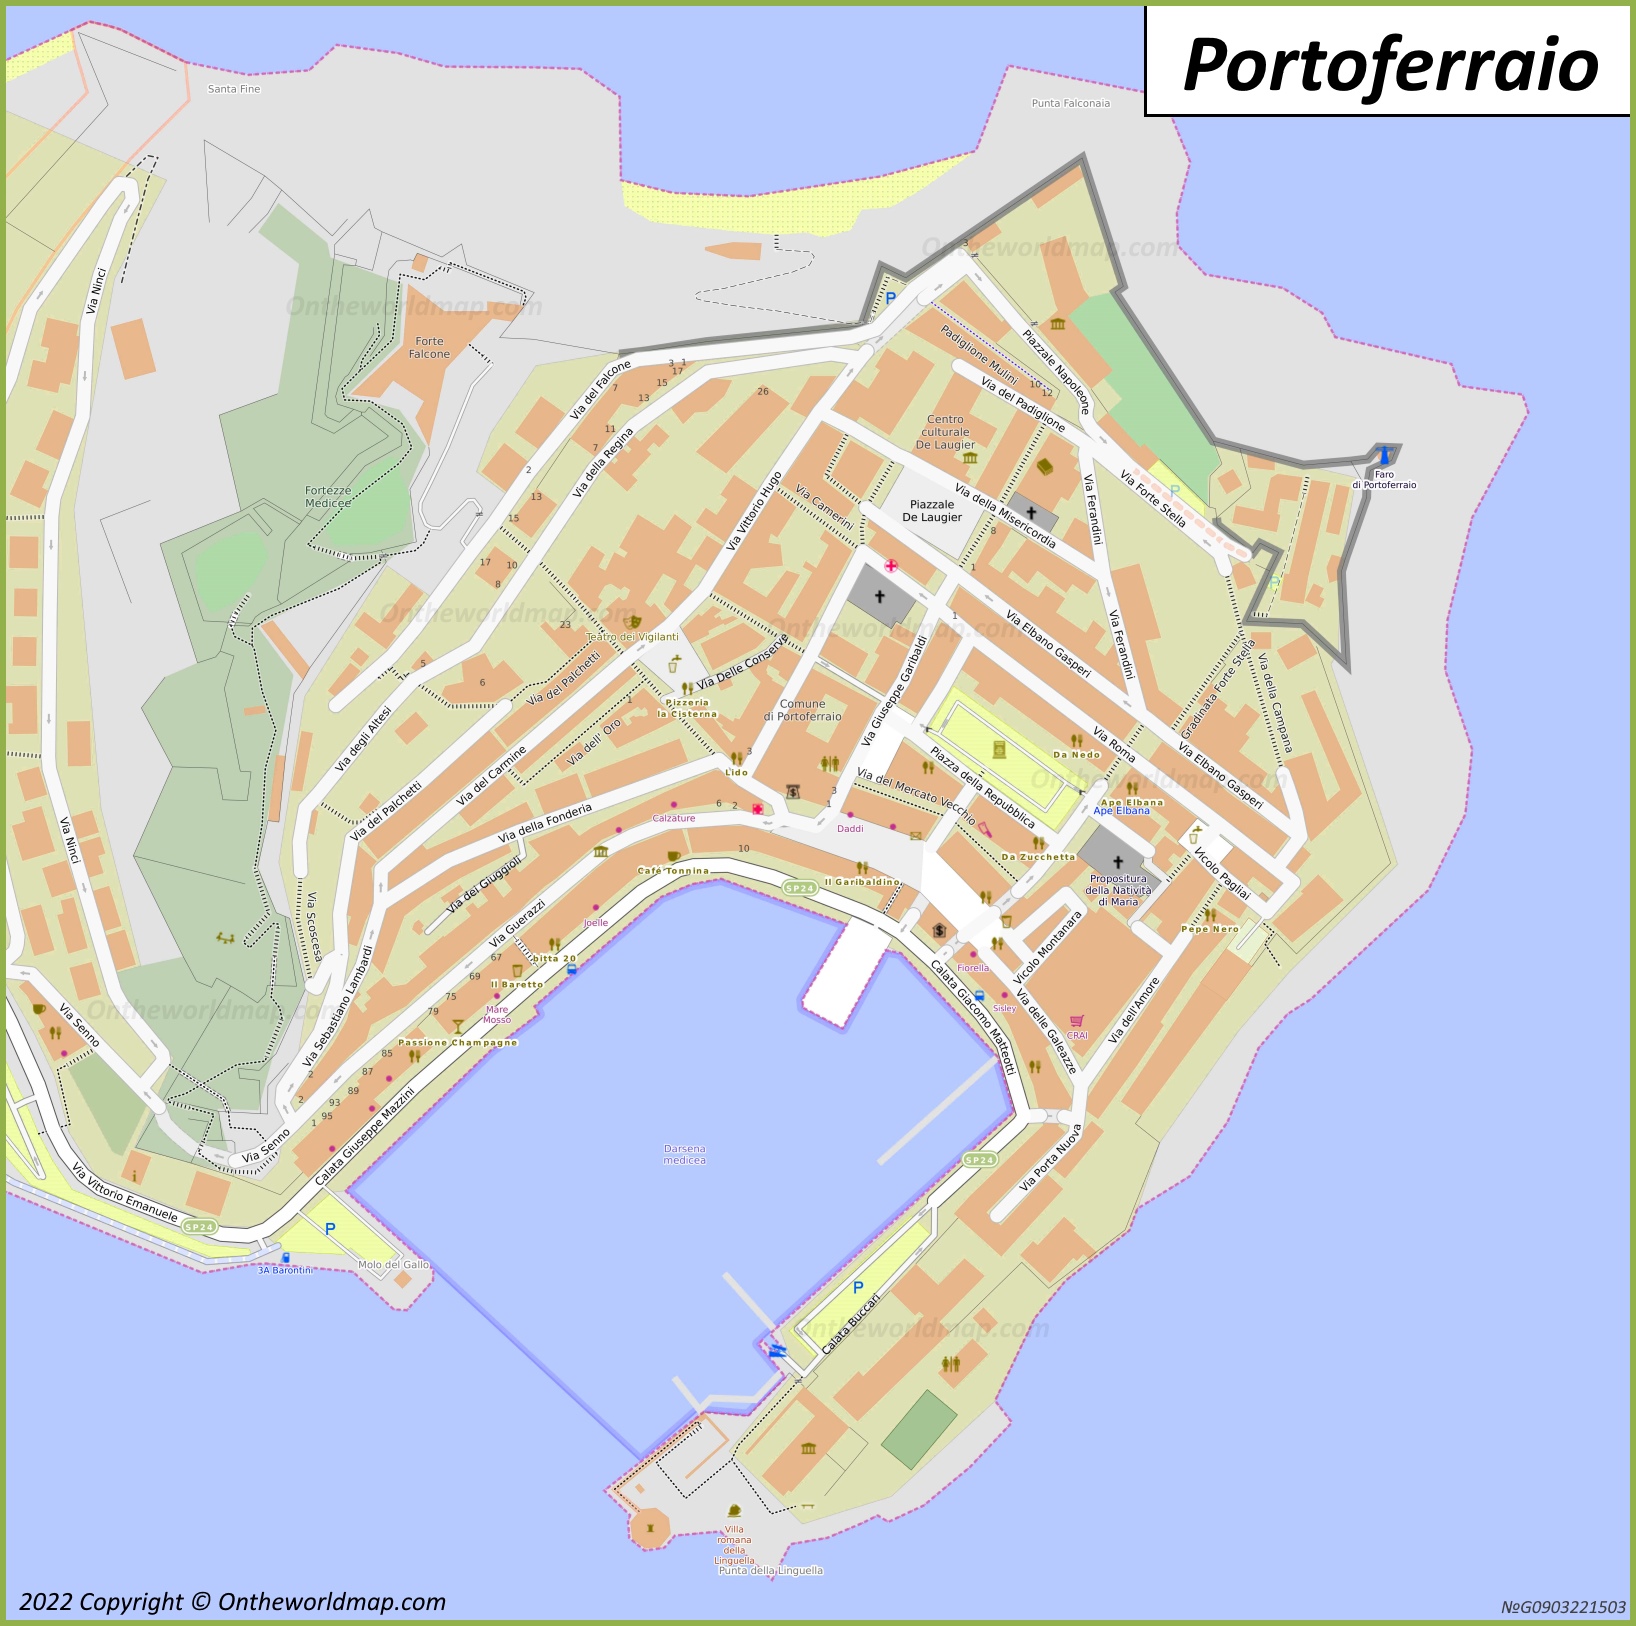 Portoferraio Old Town Map